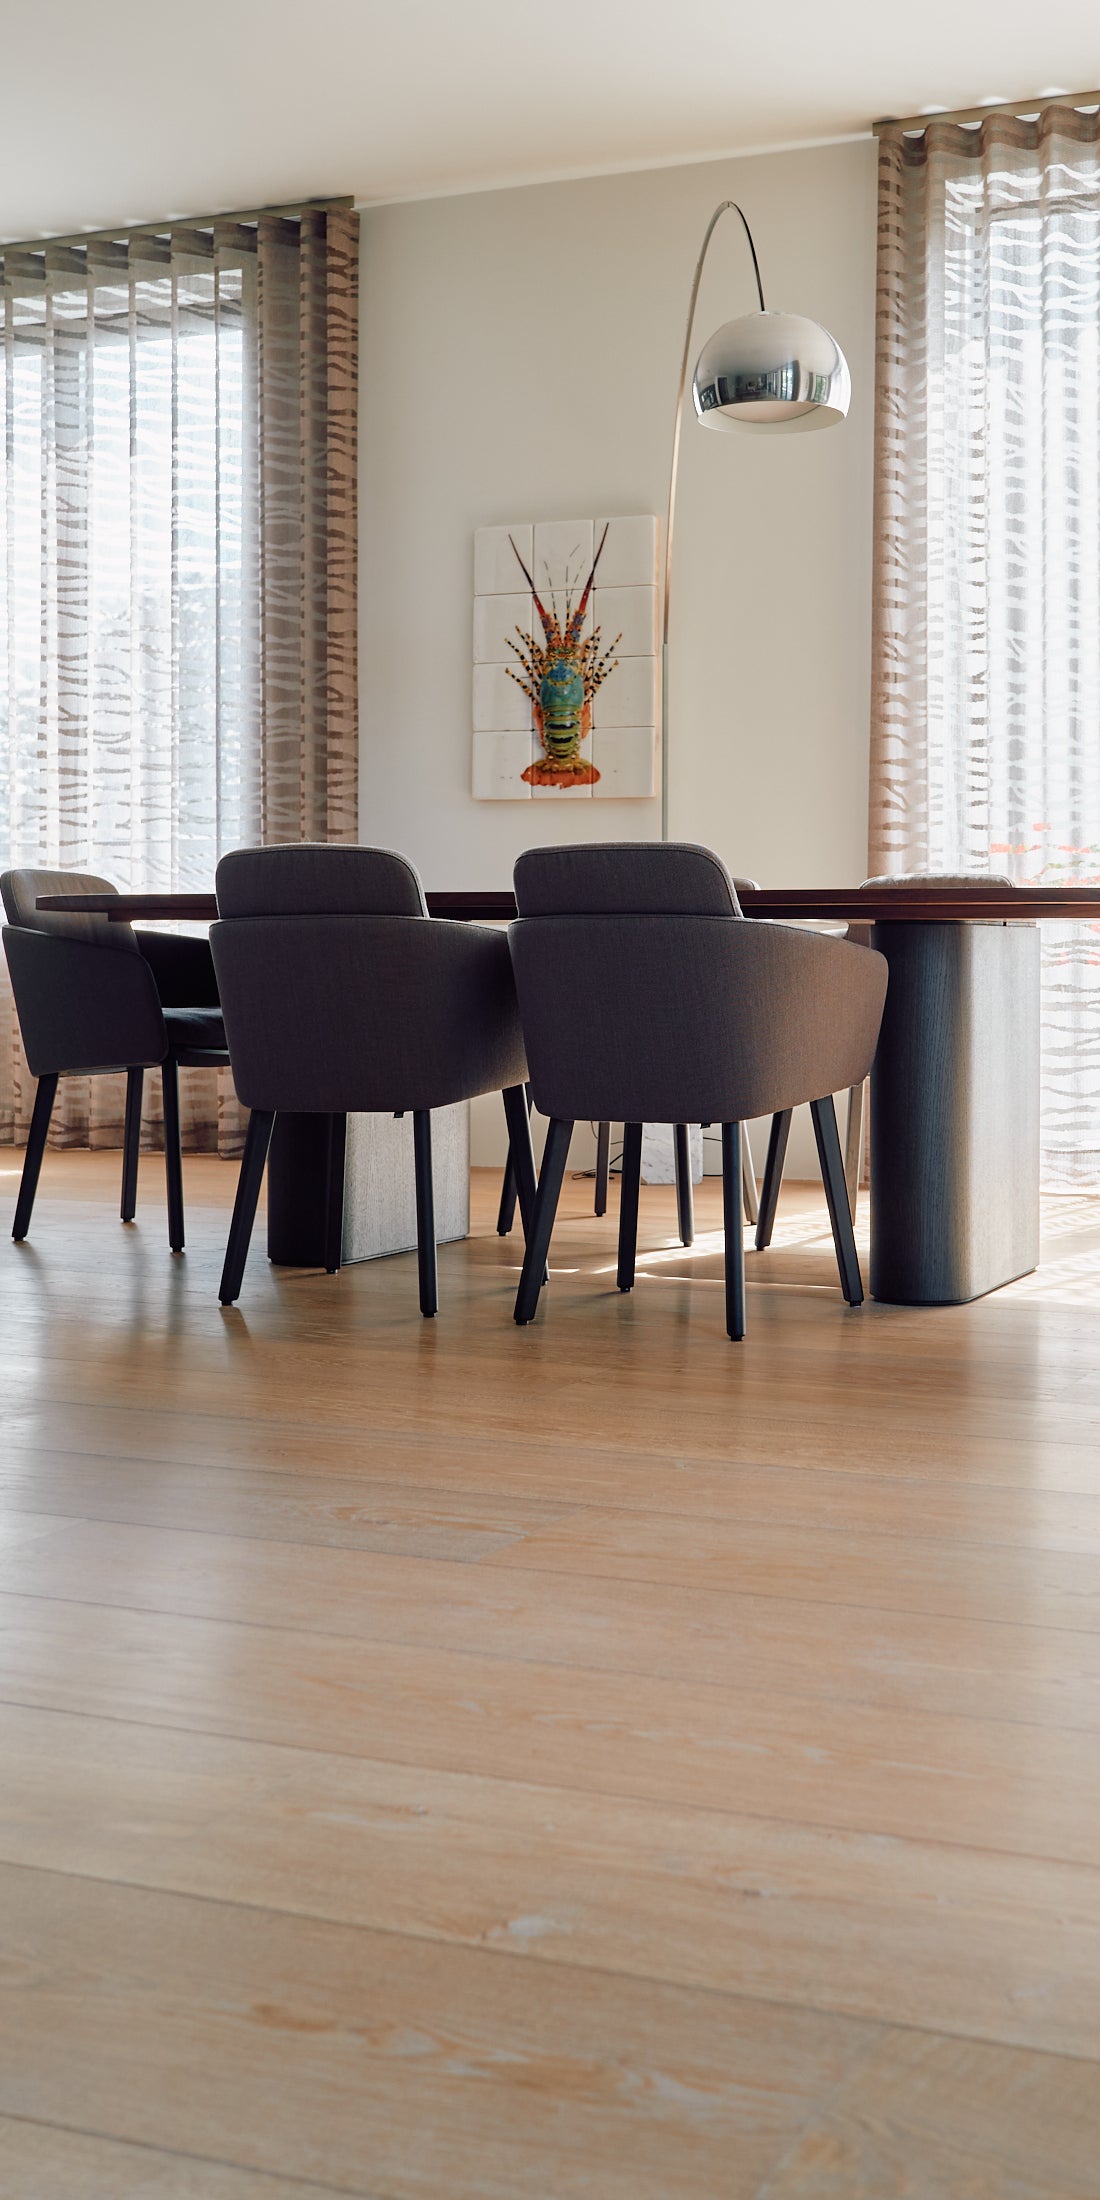 Brede Frans eiken planken houten vloer op vloerverwarming in de woonkamer